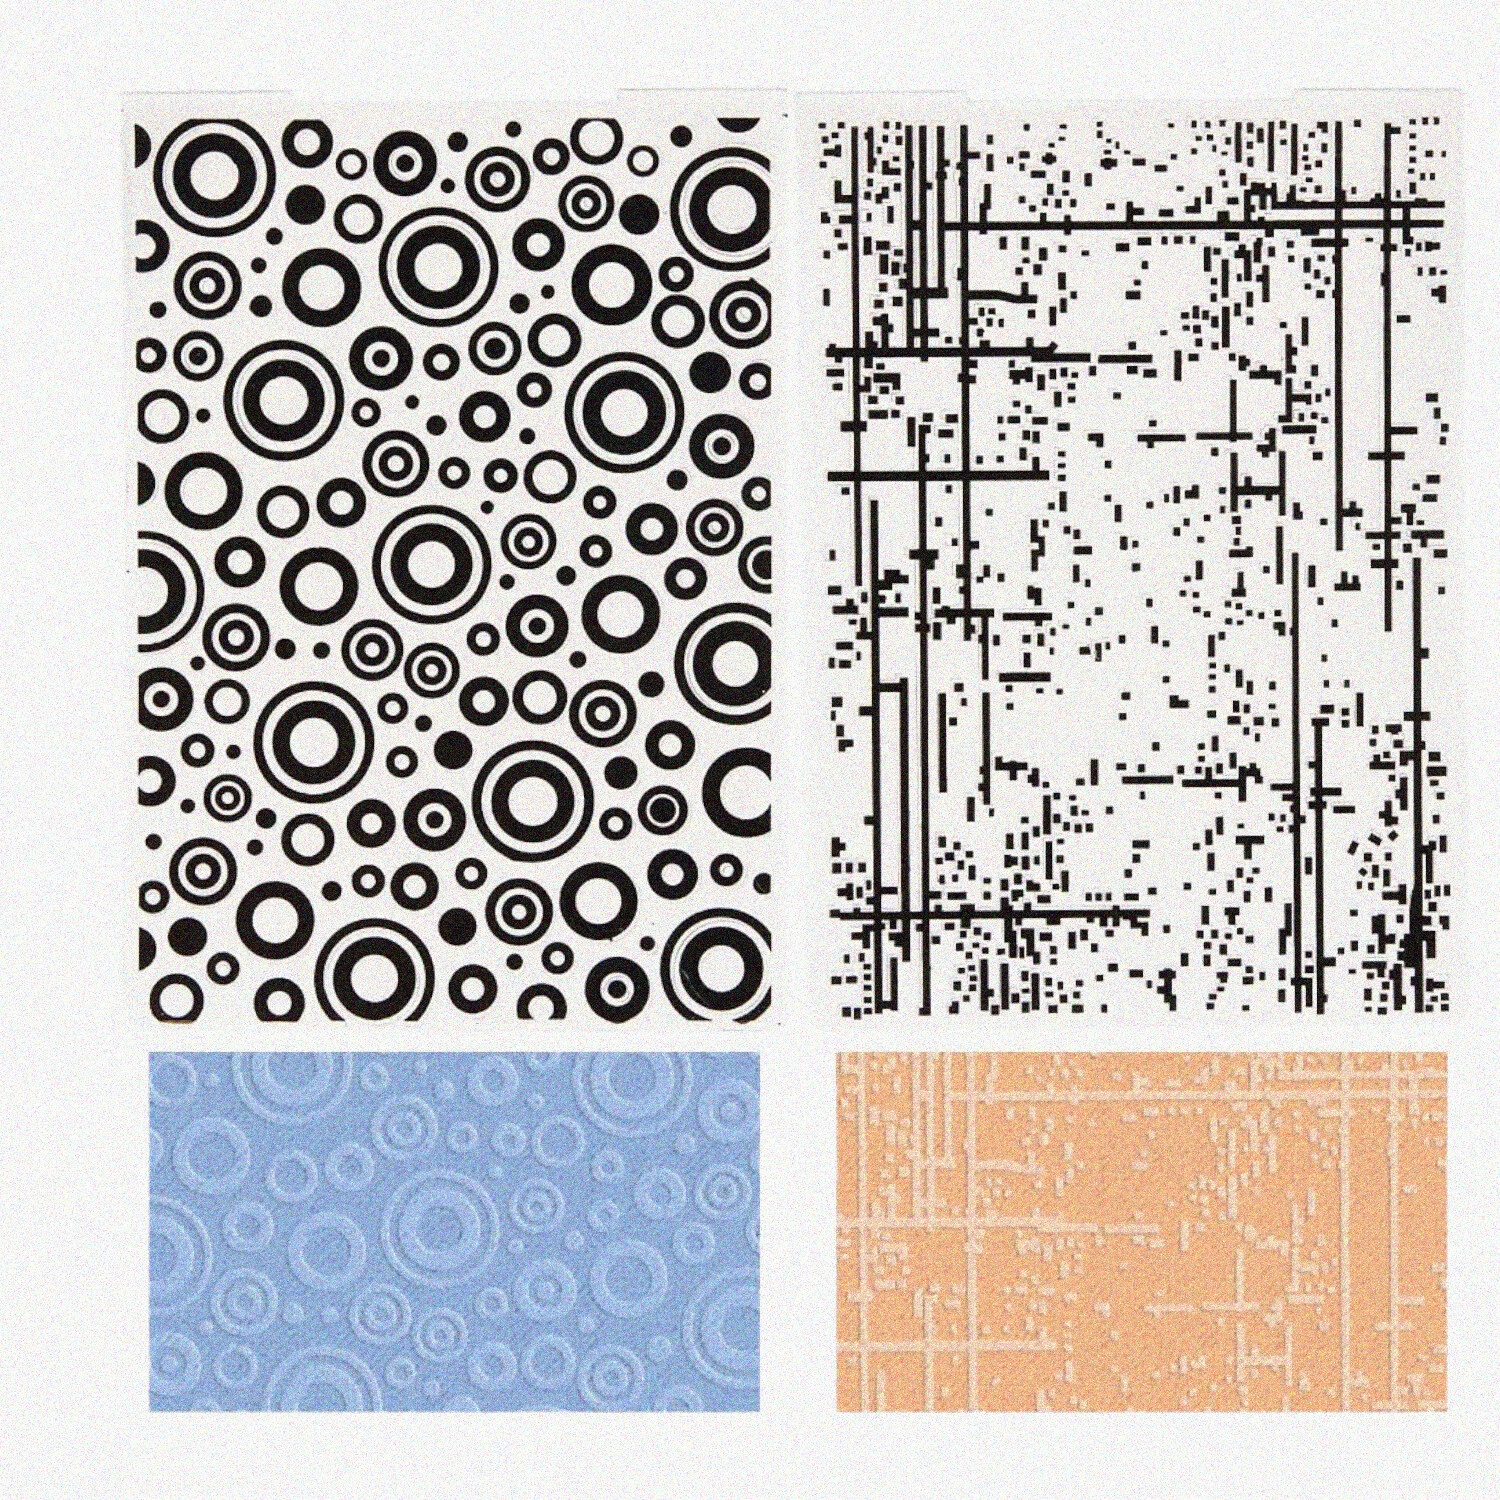 2Pcs Vintage Polka Dots & Stripe 3D Embossing Folder Set, Plastic Background Templates for DIY Scrapbooking, Card Making & Paper Crafts